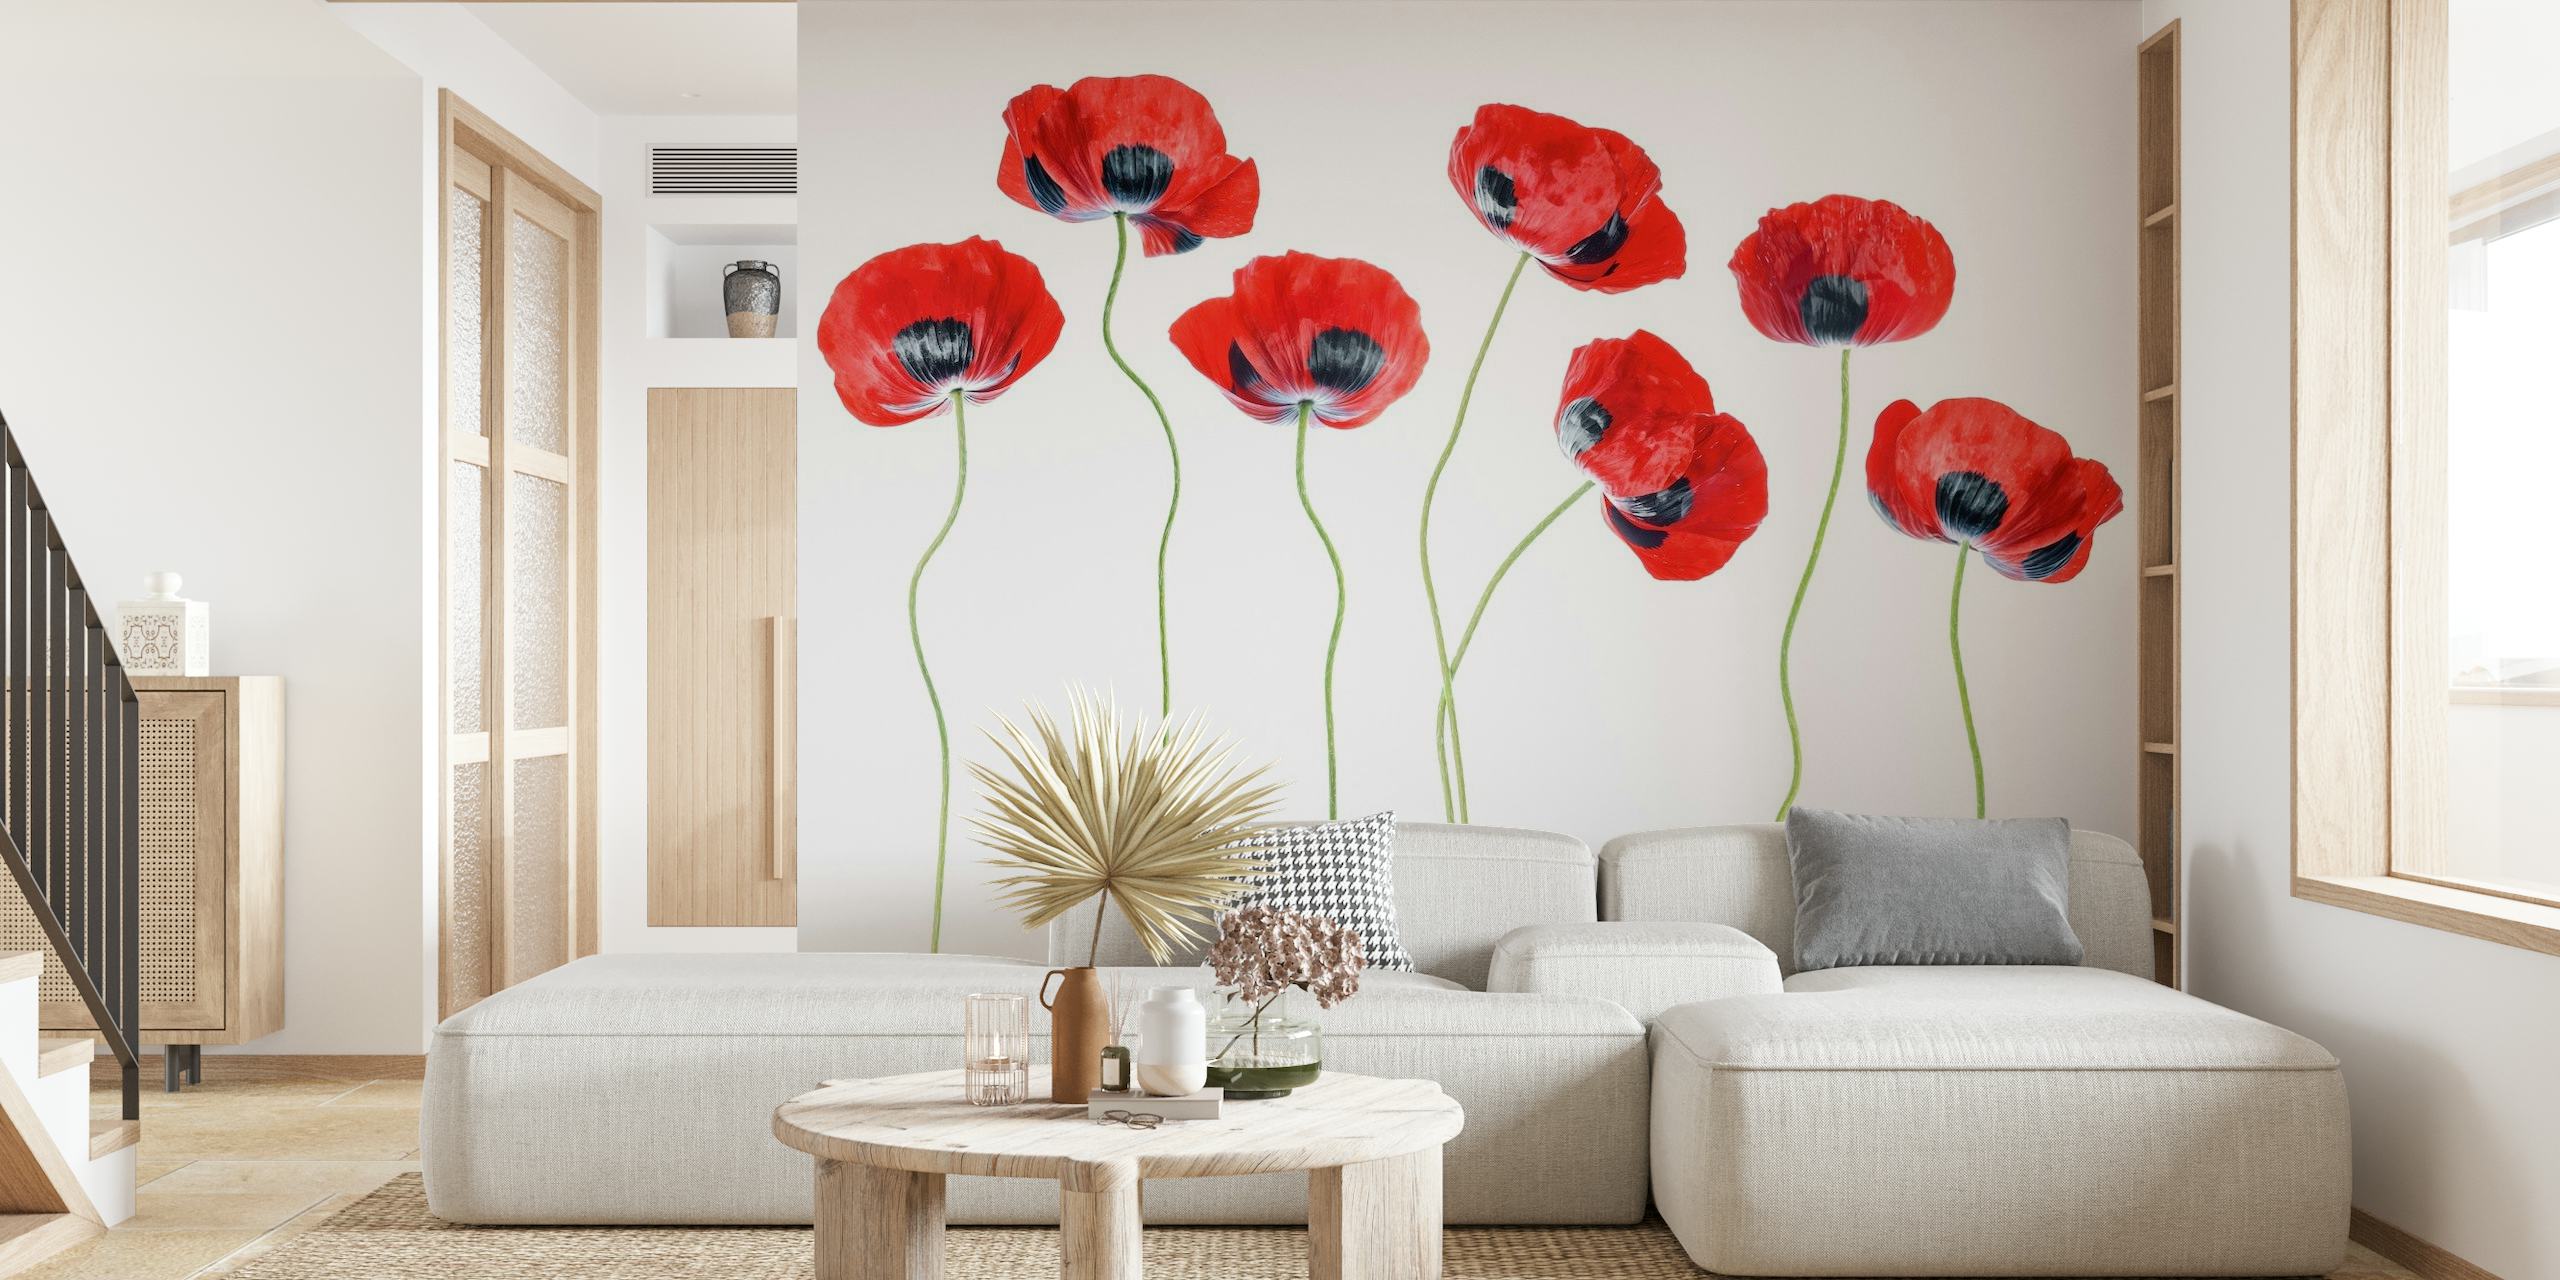 Zidna slika s cvijećem crvenog maka